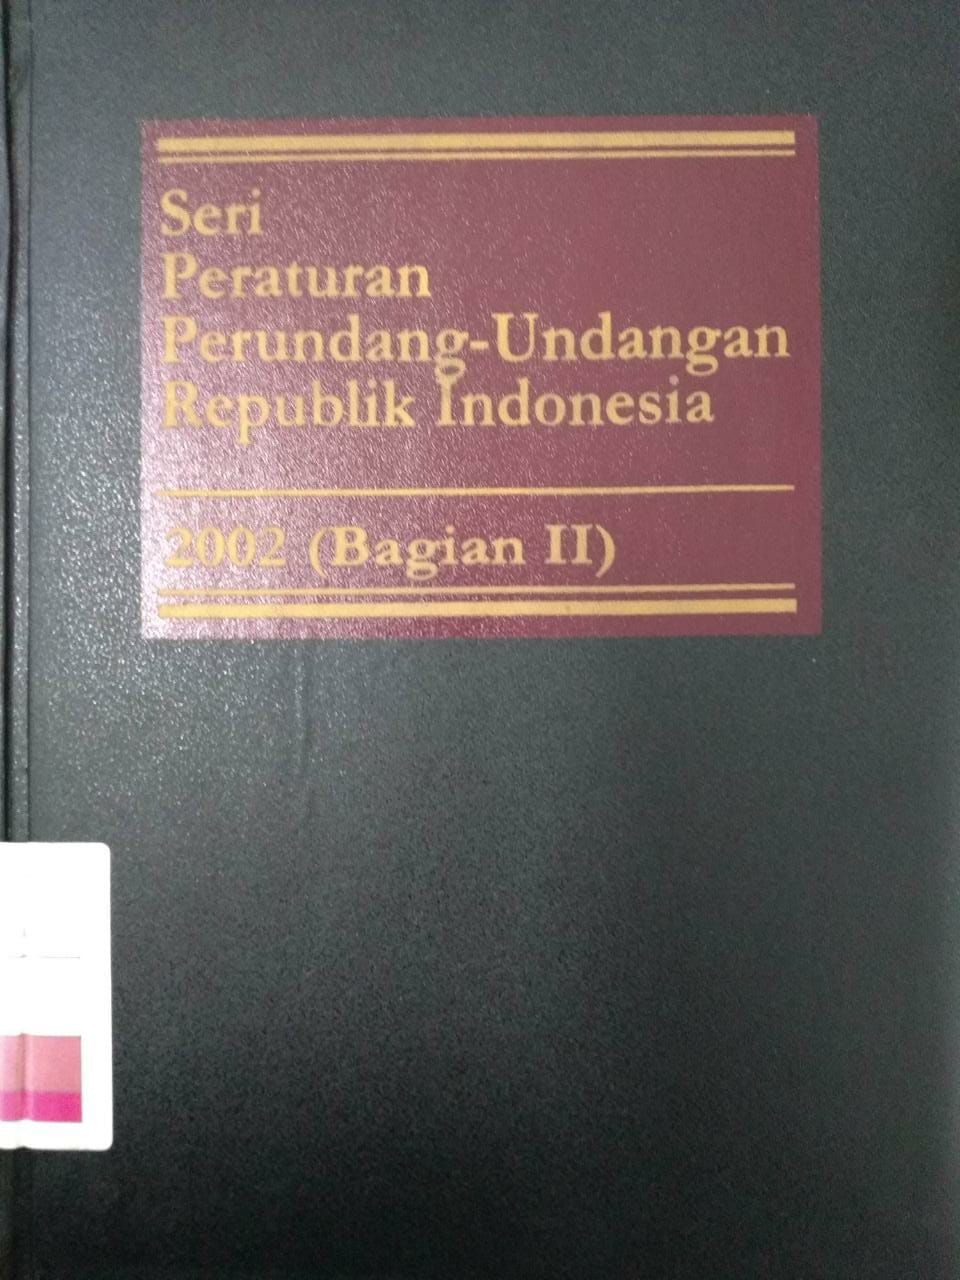 Seri Peraturan Perundang-undangan Republik Indonesia 2003 (Bagian III)